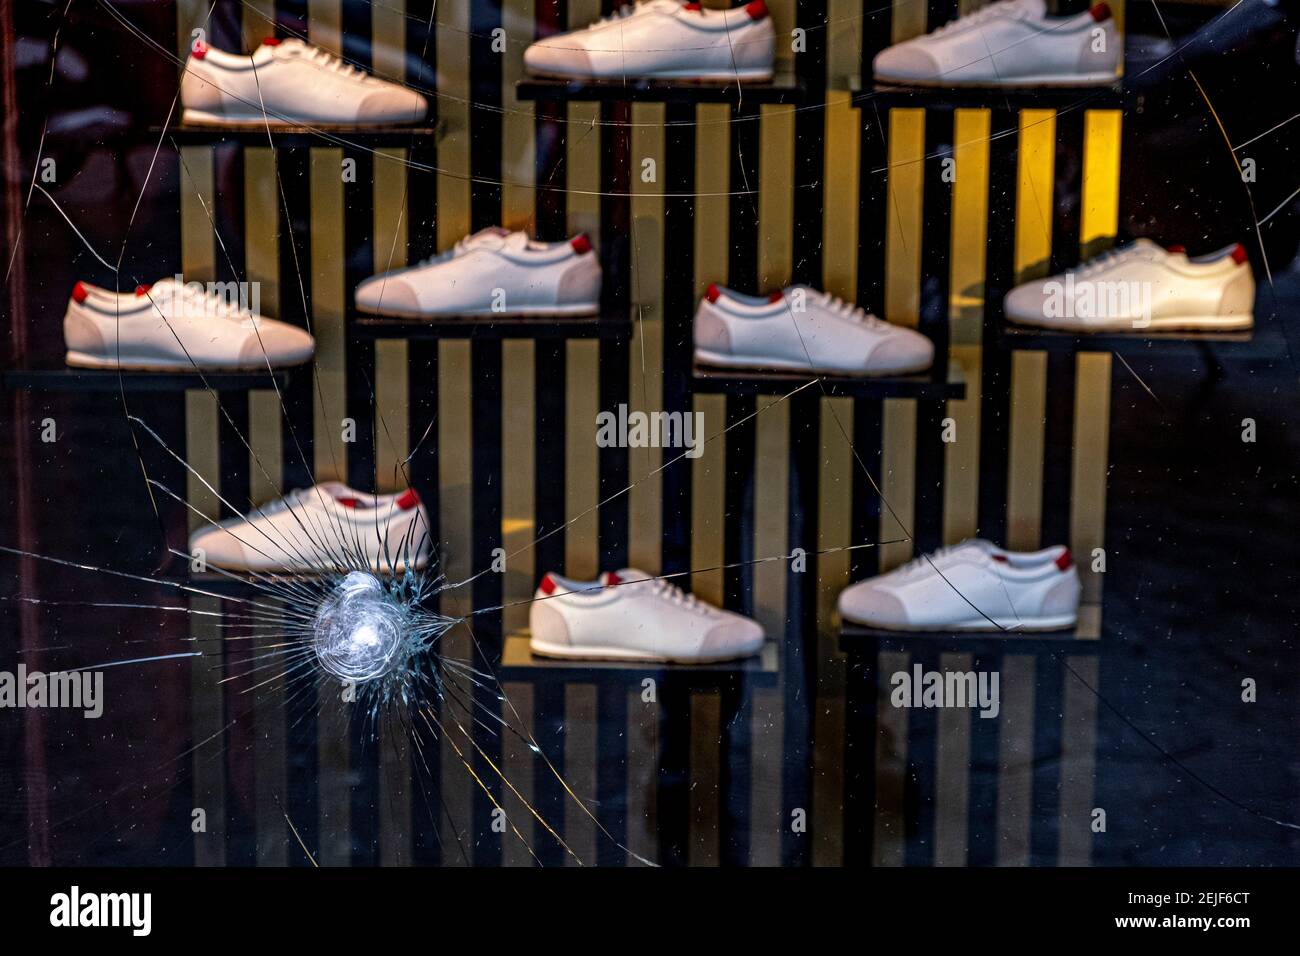 Barcelone, Espagne. 22 février 2021. Une fenêtre en verre d'un magasin de  chaussures de sport de luxe à Passeig de Gràcia vu endommagé par des  pierres.plus de 50 magasins ont subi des